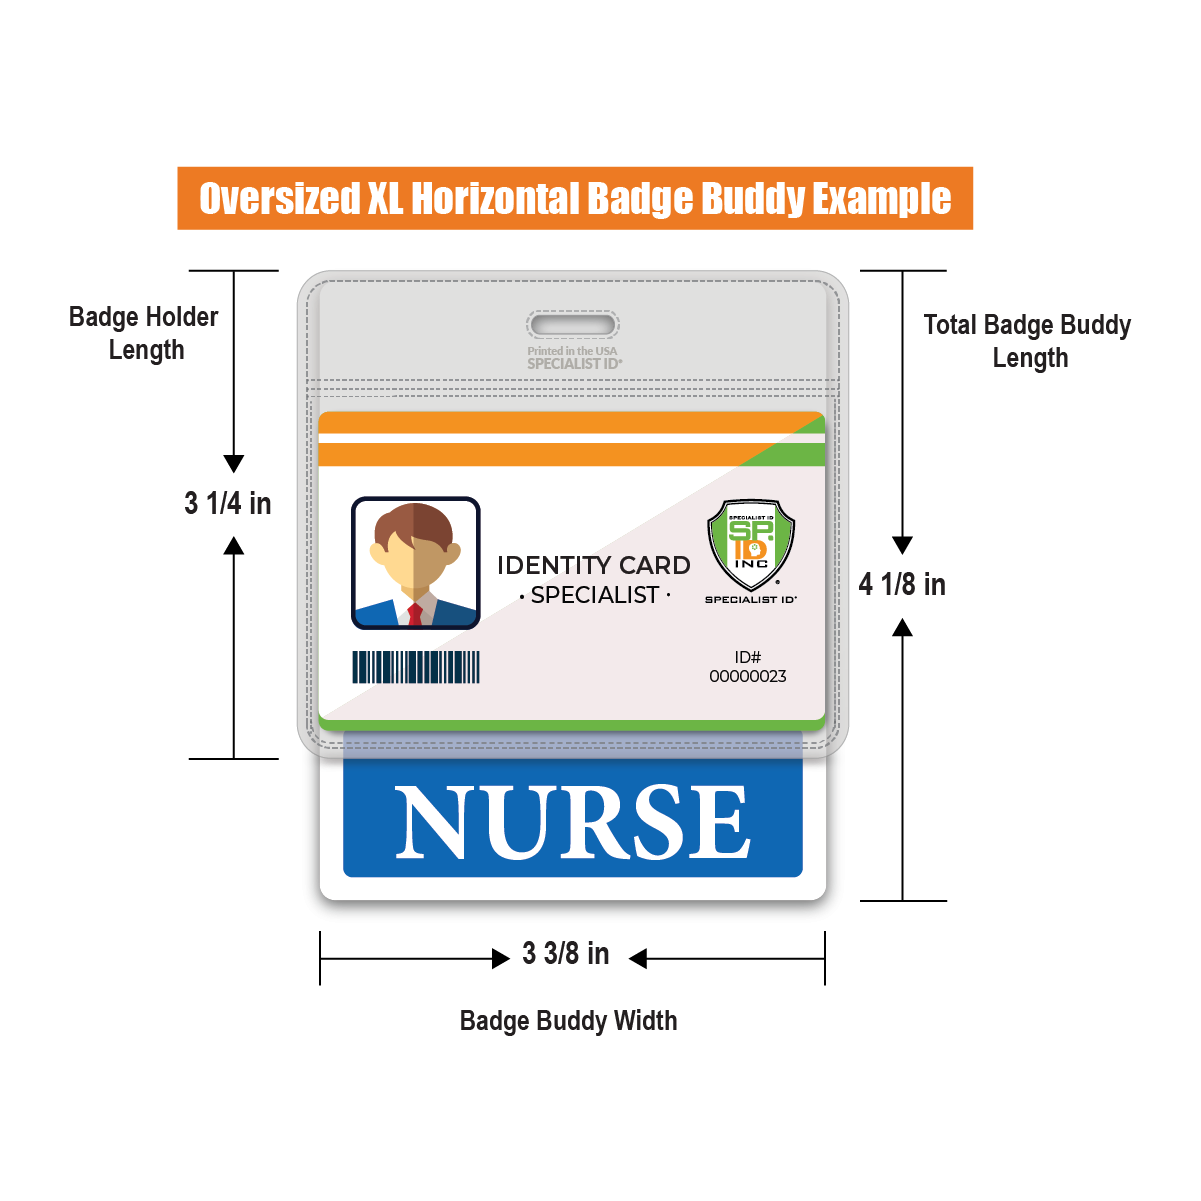 XL Nurse Badge Buddy Horizontal - Extended 3 3/8"x 4 1/8"